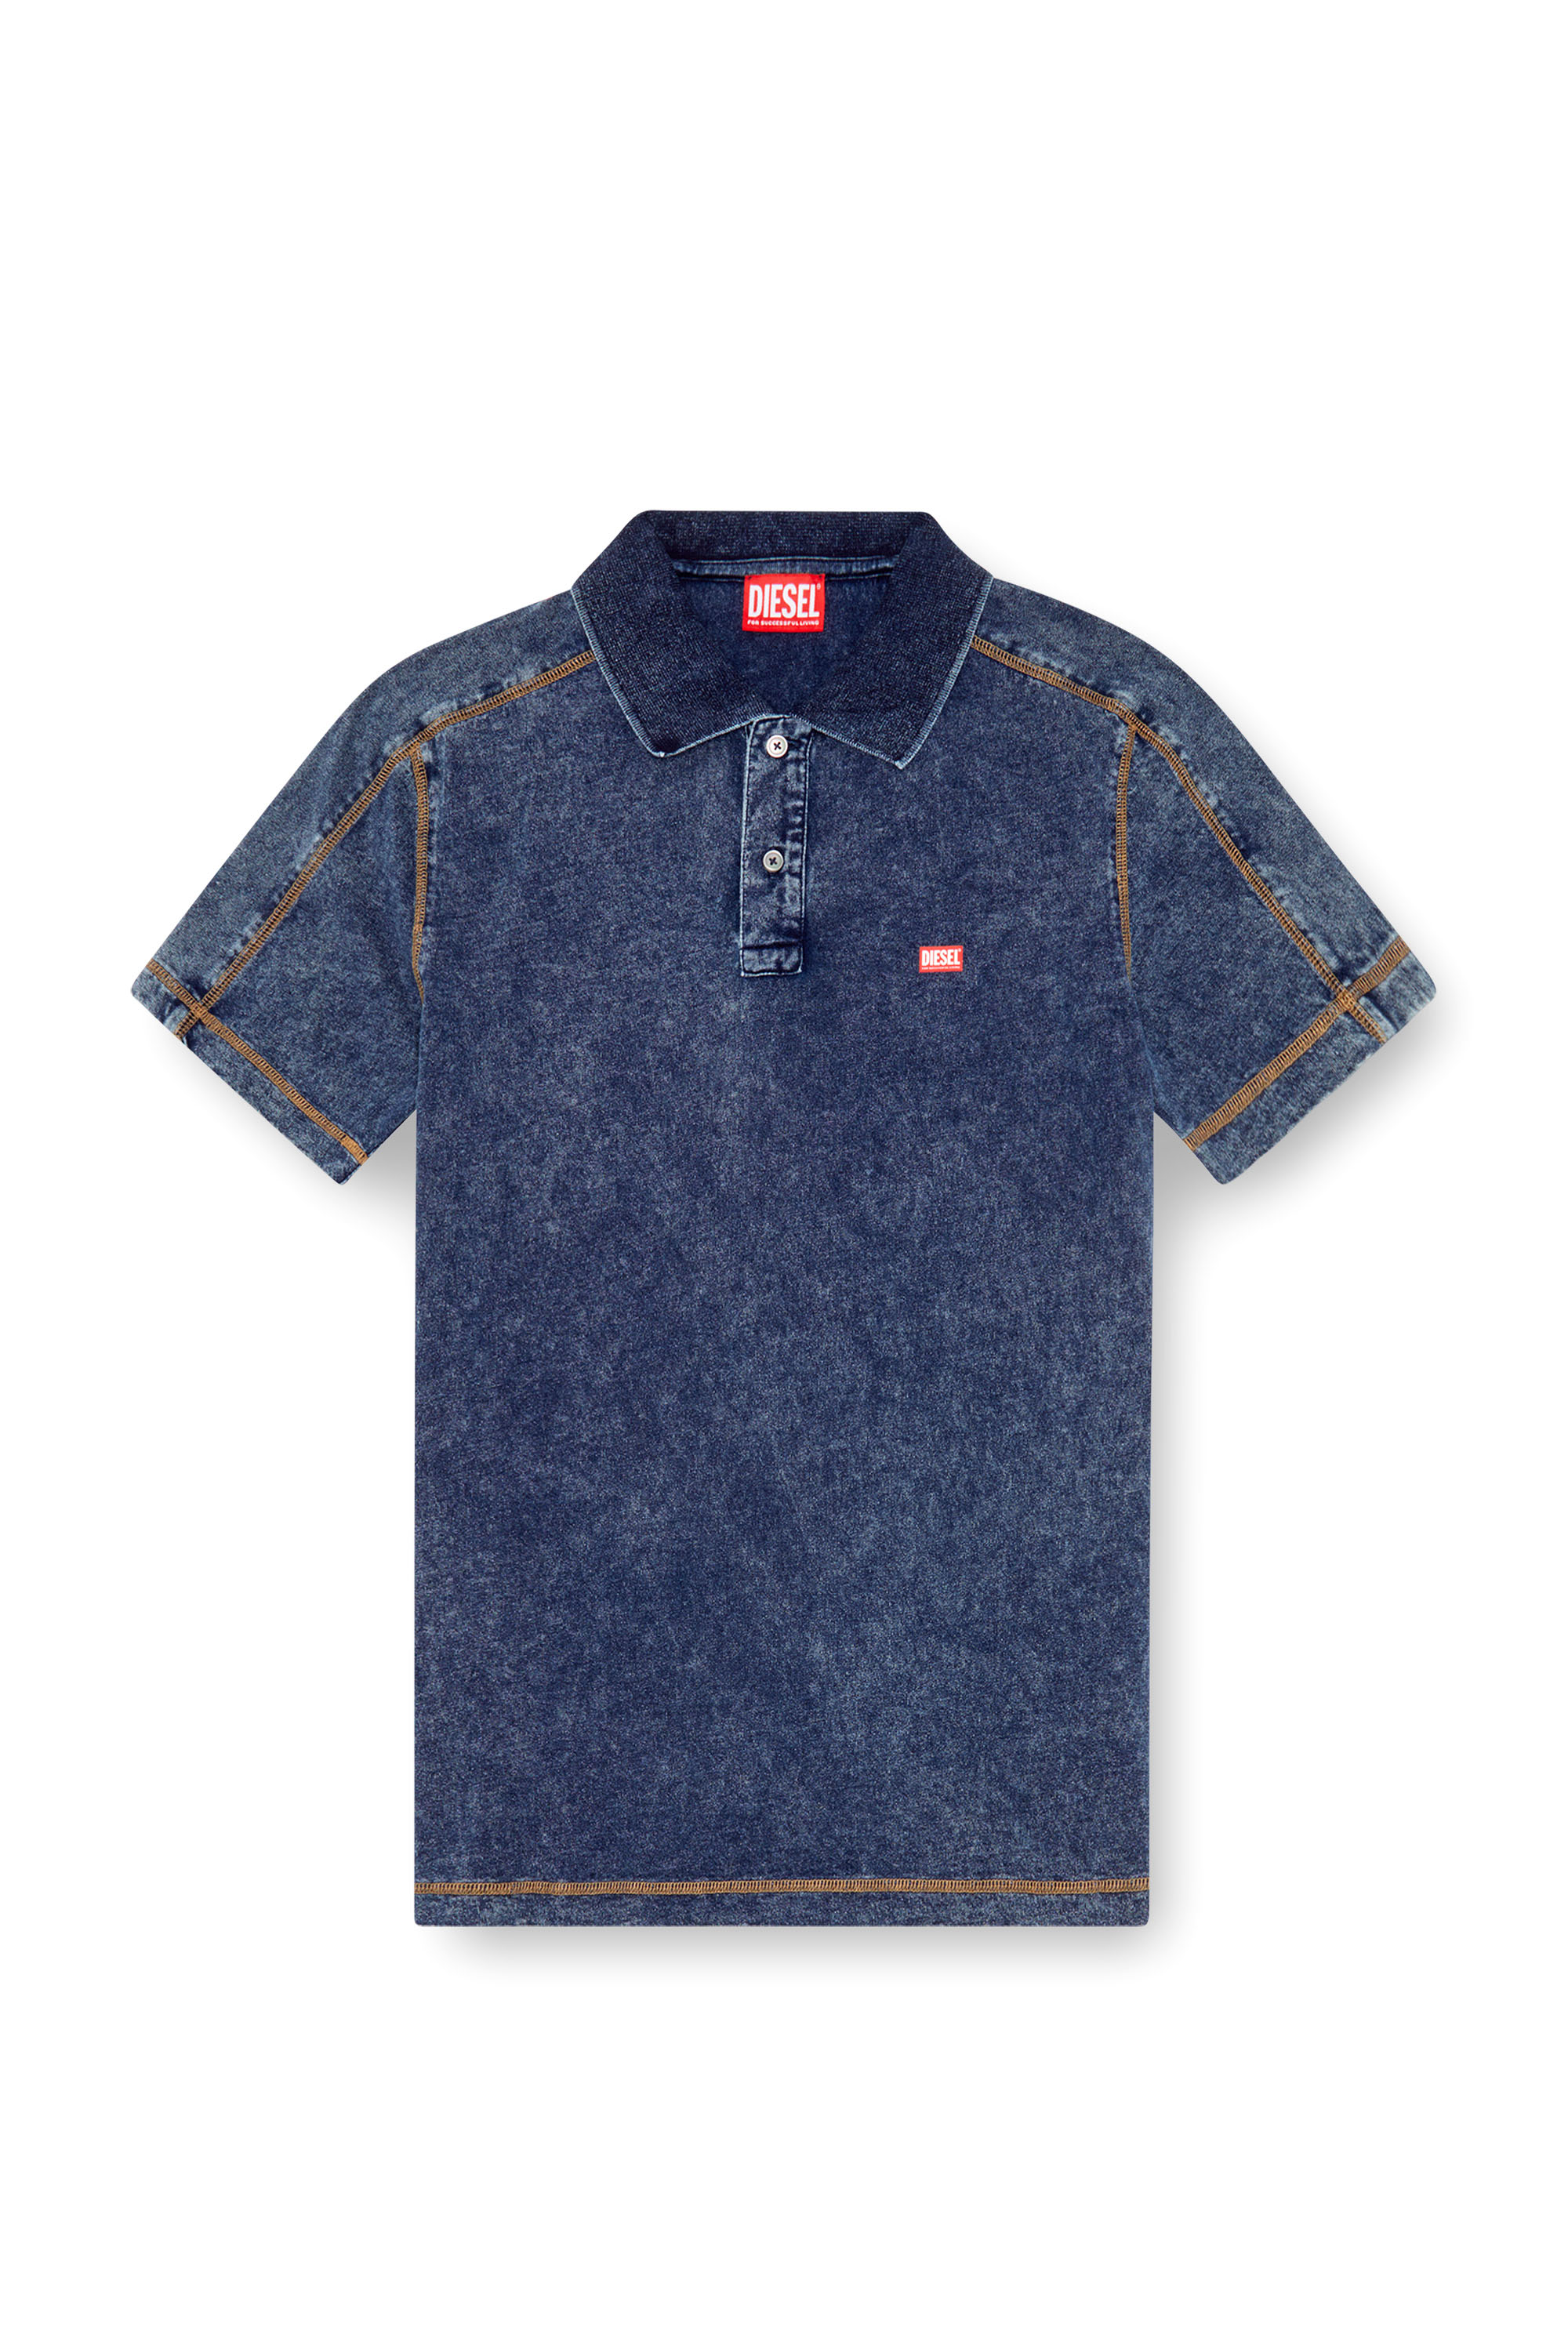 Diesel - T-SWIND, Male Polo shirt in denim-effect jersey in ブルー - Image 3